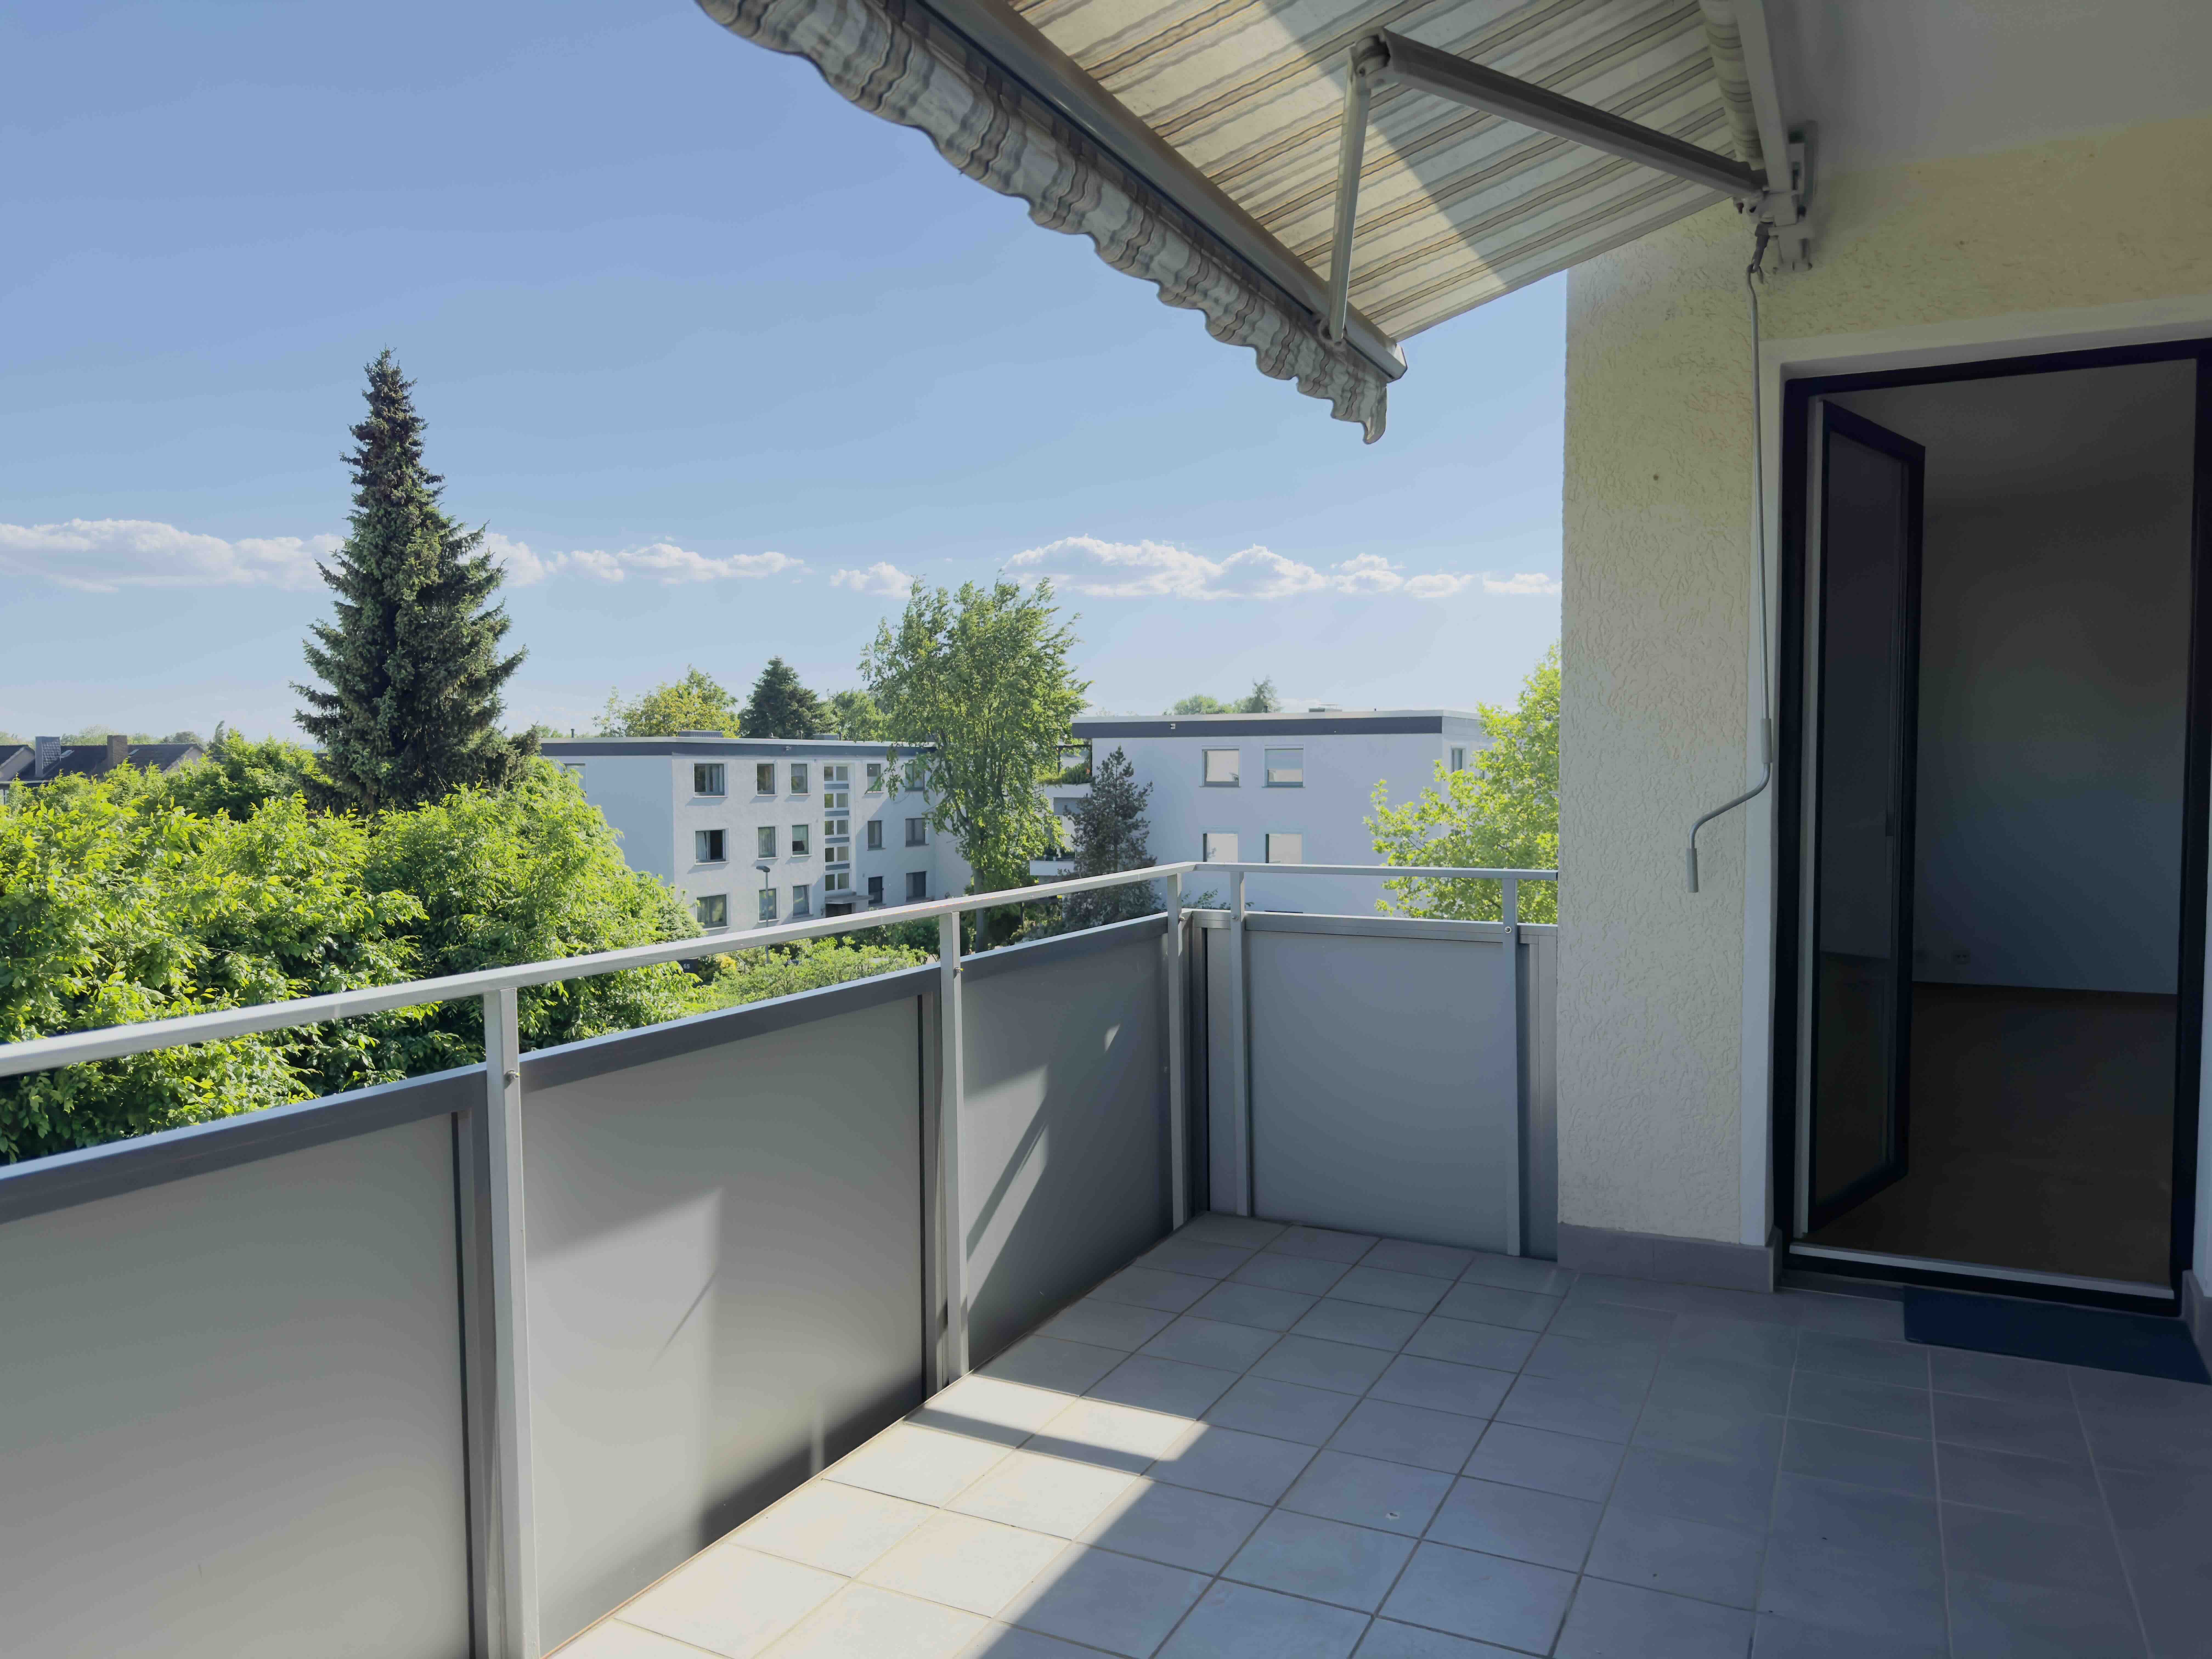 Pattensen: Sonnige ETW mit 3 Zimmern, Parkett, großem Süd-Balkon mit Blick ins Grüne, Garage (opt.)